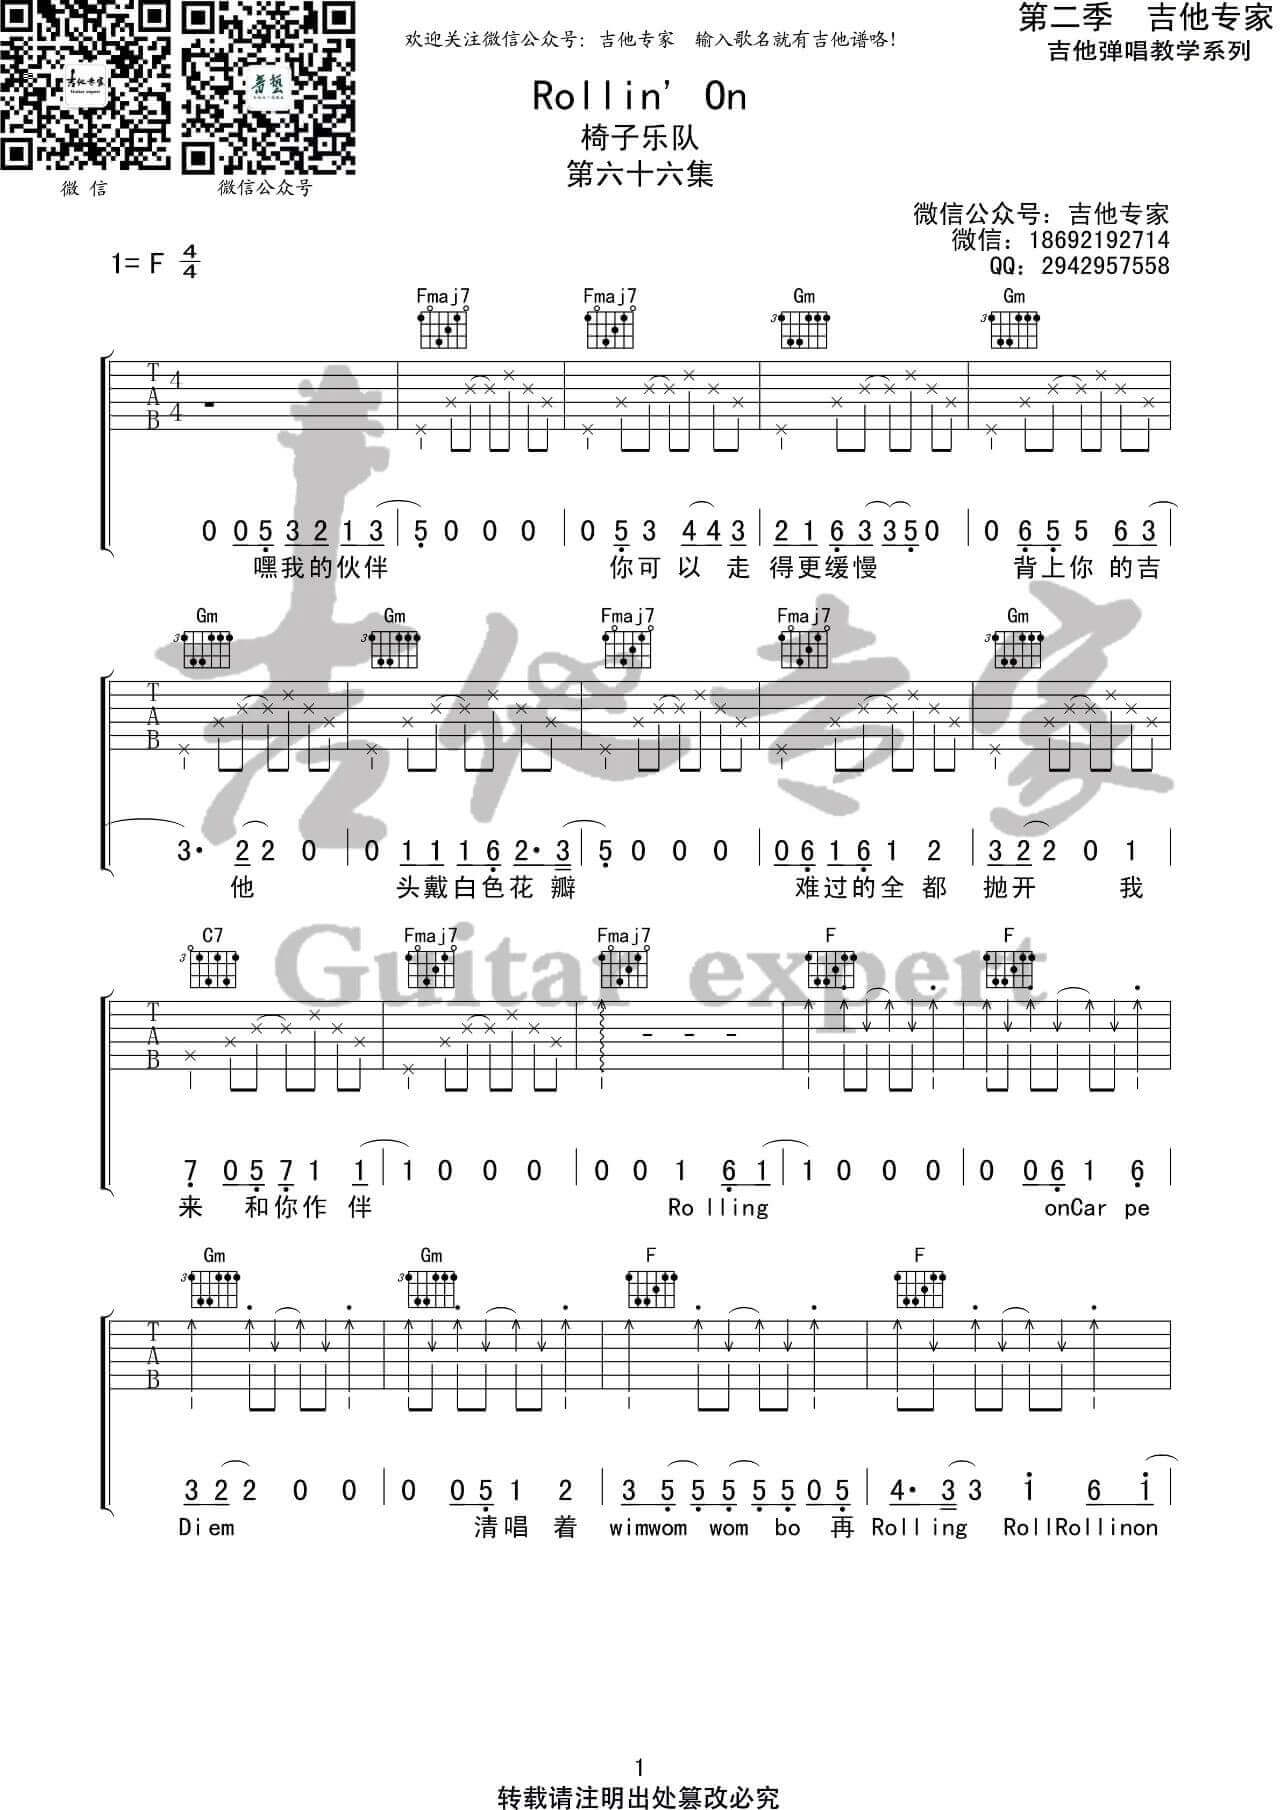 吉他源-Rollin’ On吉他谱-椅子乐团-原调F调版吉他谱插图